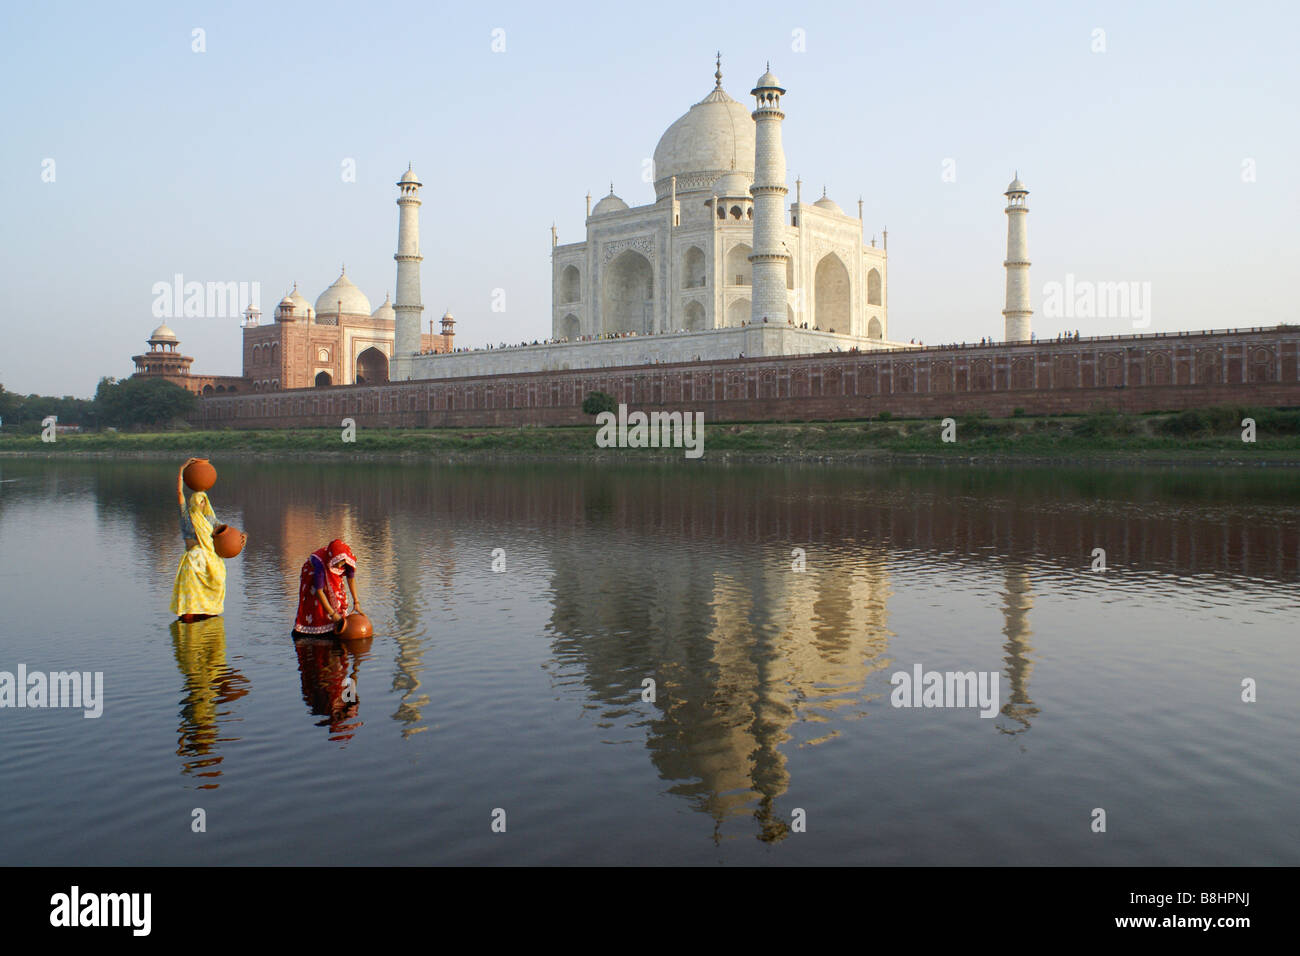 Les femmes obtenir de l'eau à partir de la rivière Yamuna avec Taj Mahal en arrière-plan, Agra, Inde Banque D'Images